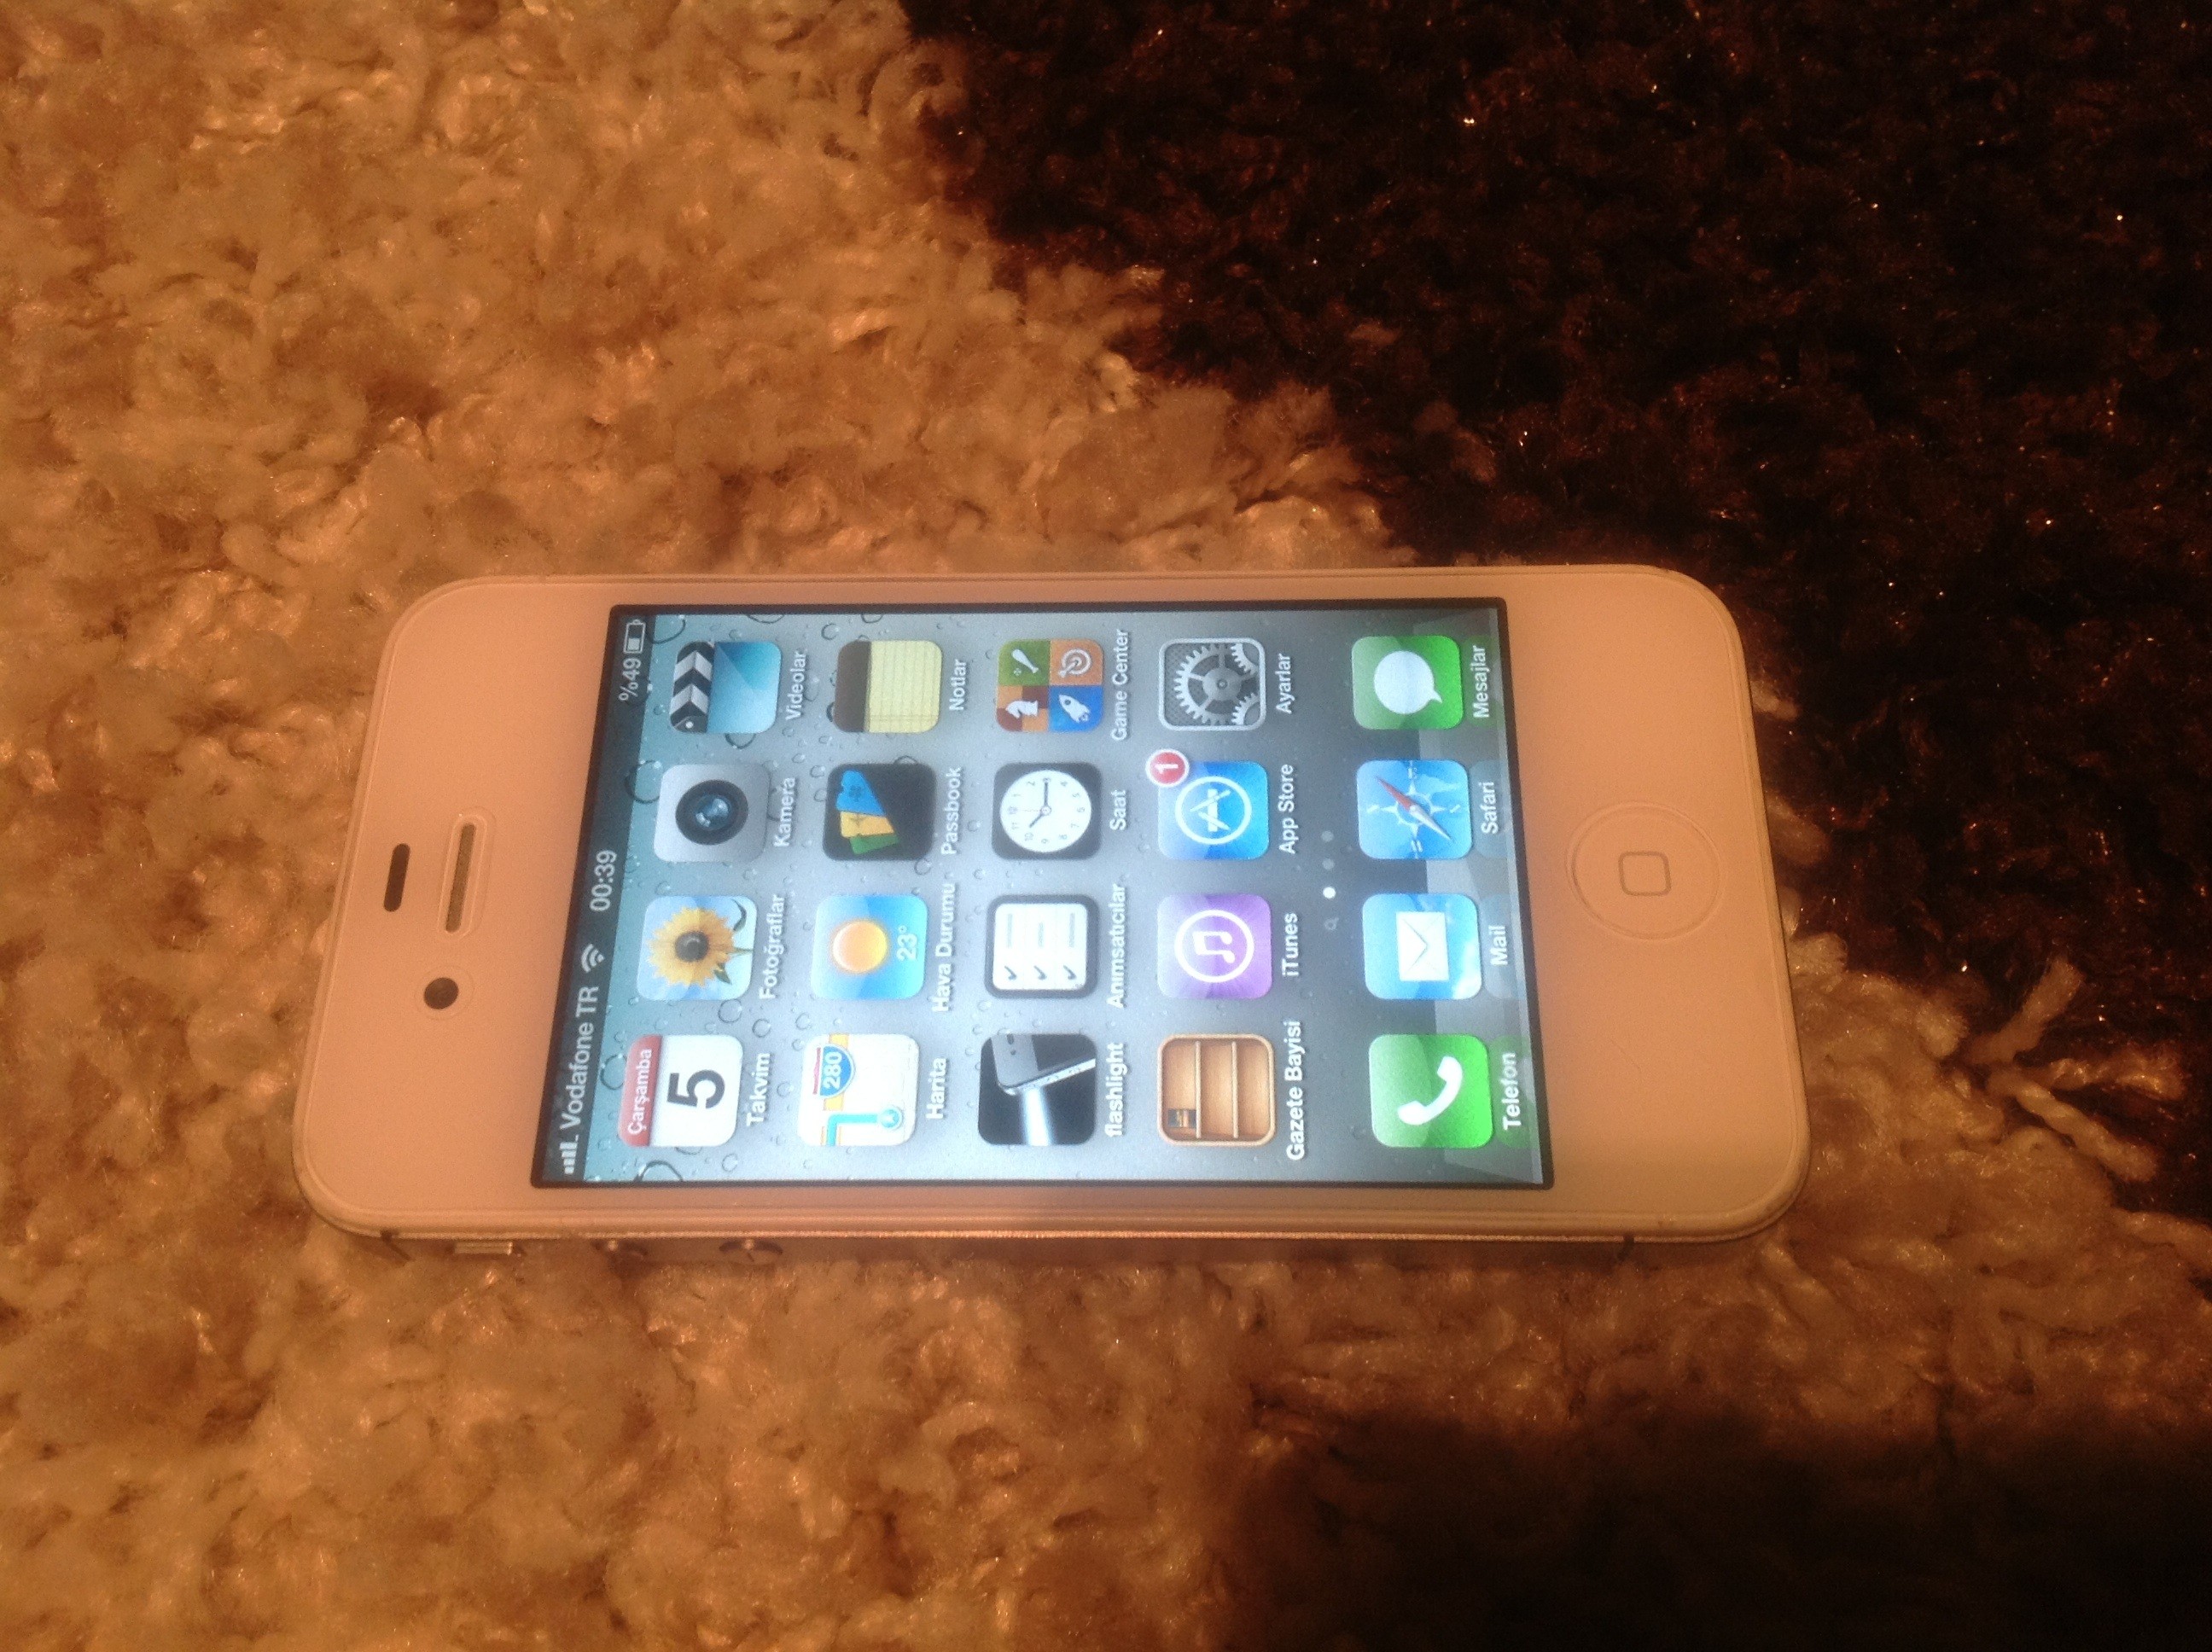  Iphone 4s 16gb beyaz  temiz kullanılmış 1000 tl